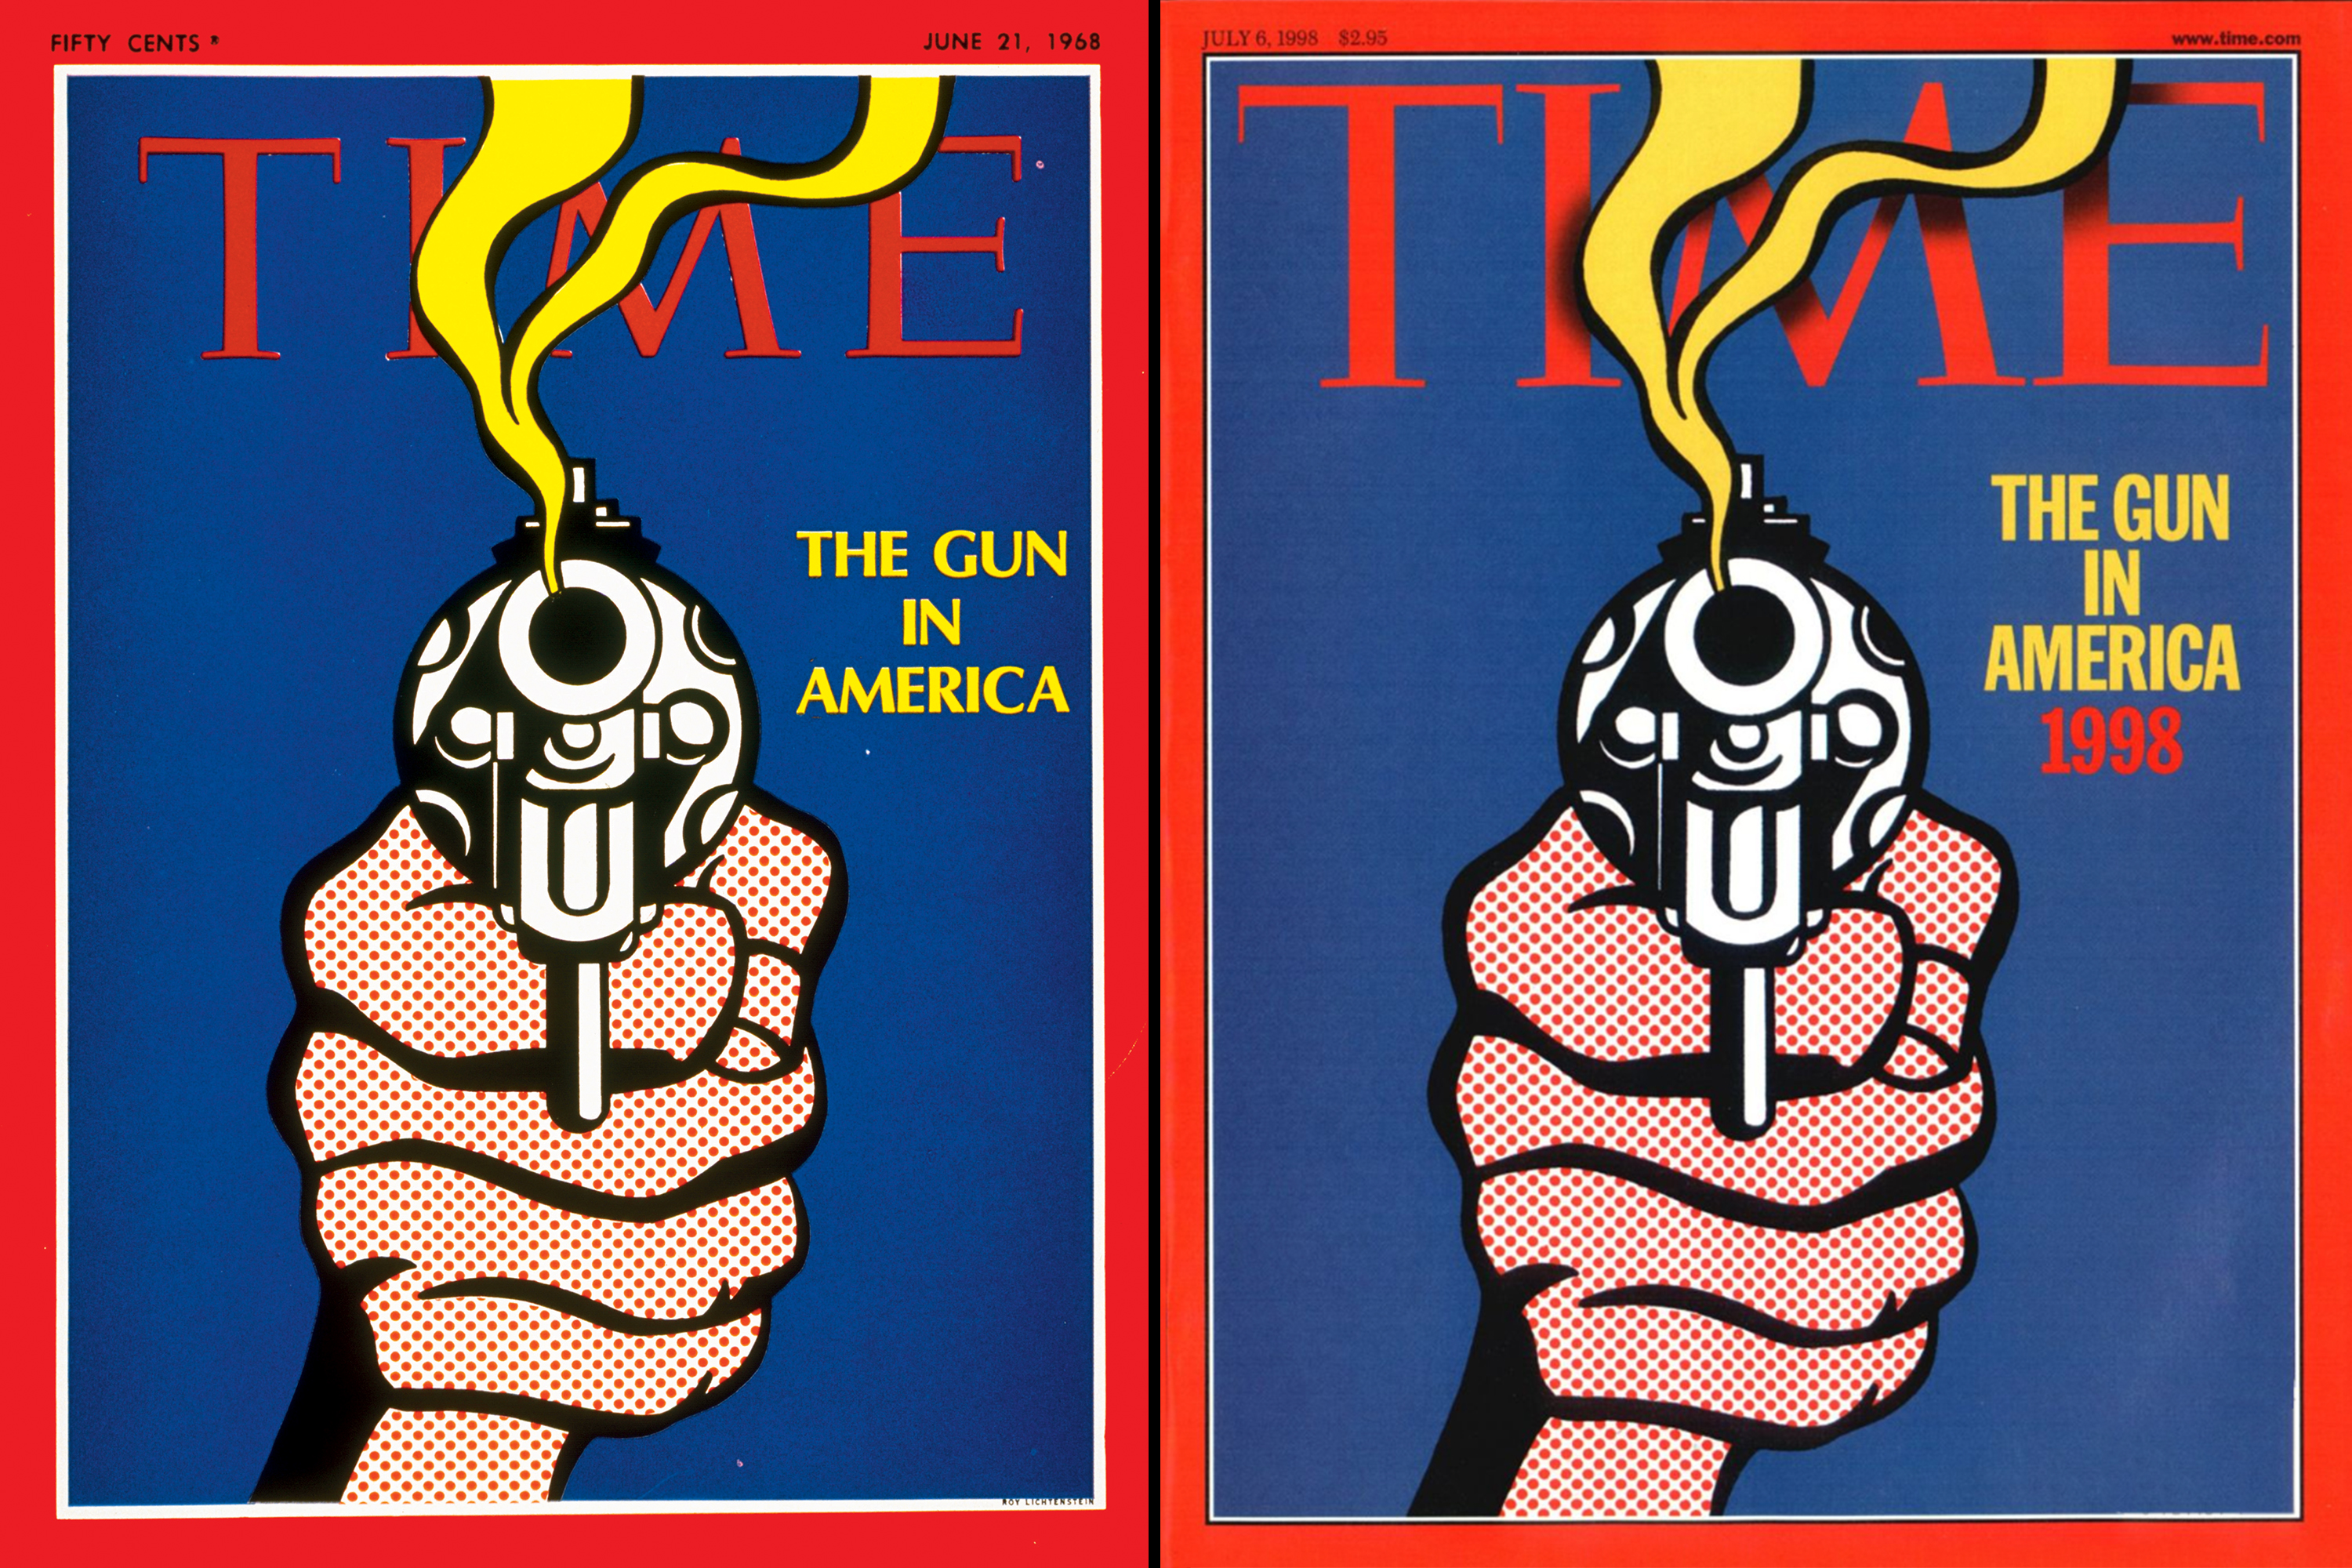 The Gun in America," June 21, 1968; "The Gun in America," July 6, 1998 (Illustration by Roy Lichtenstein, ")